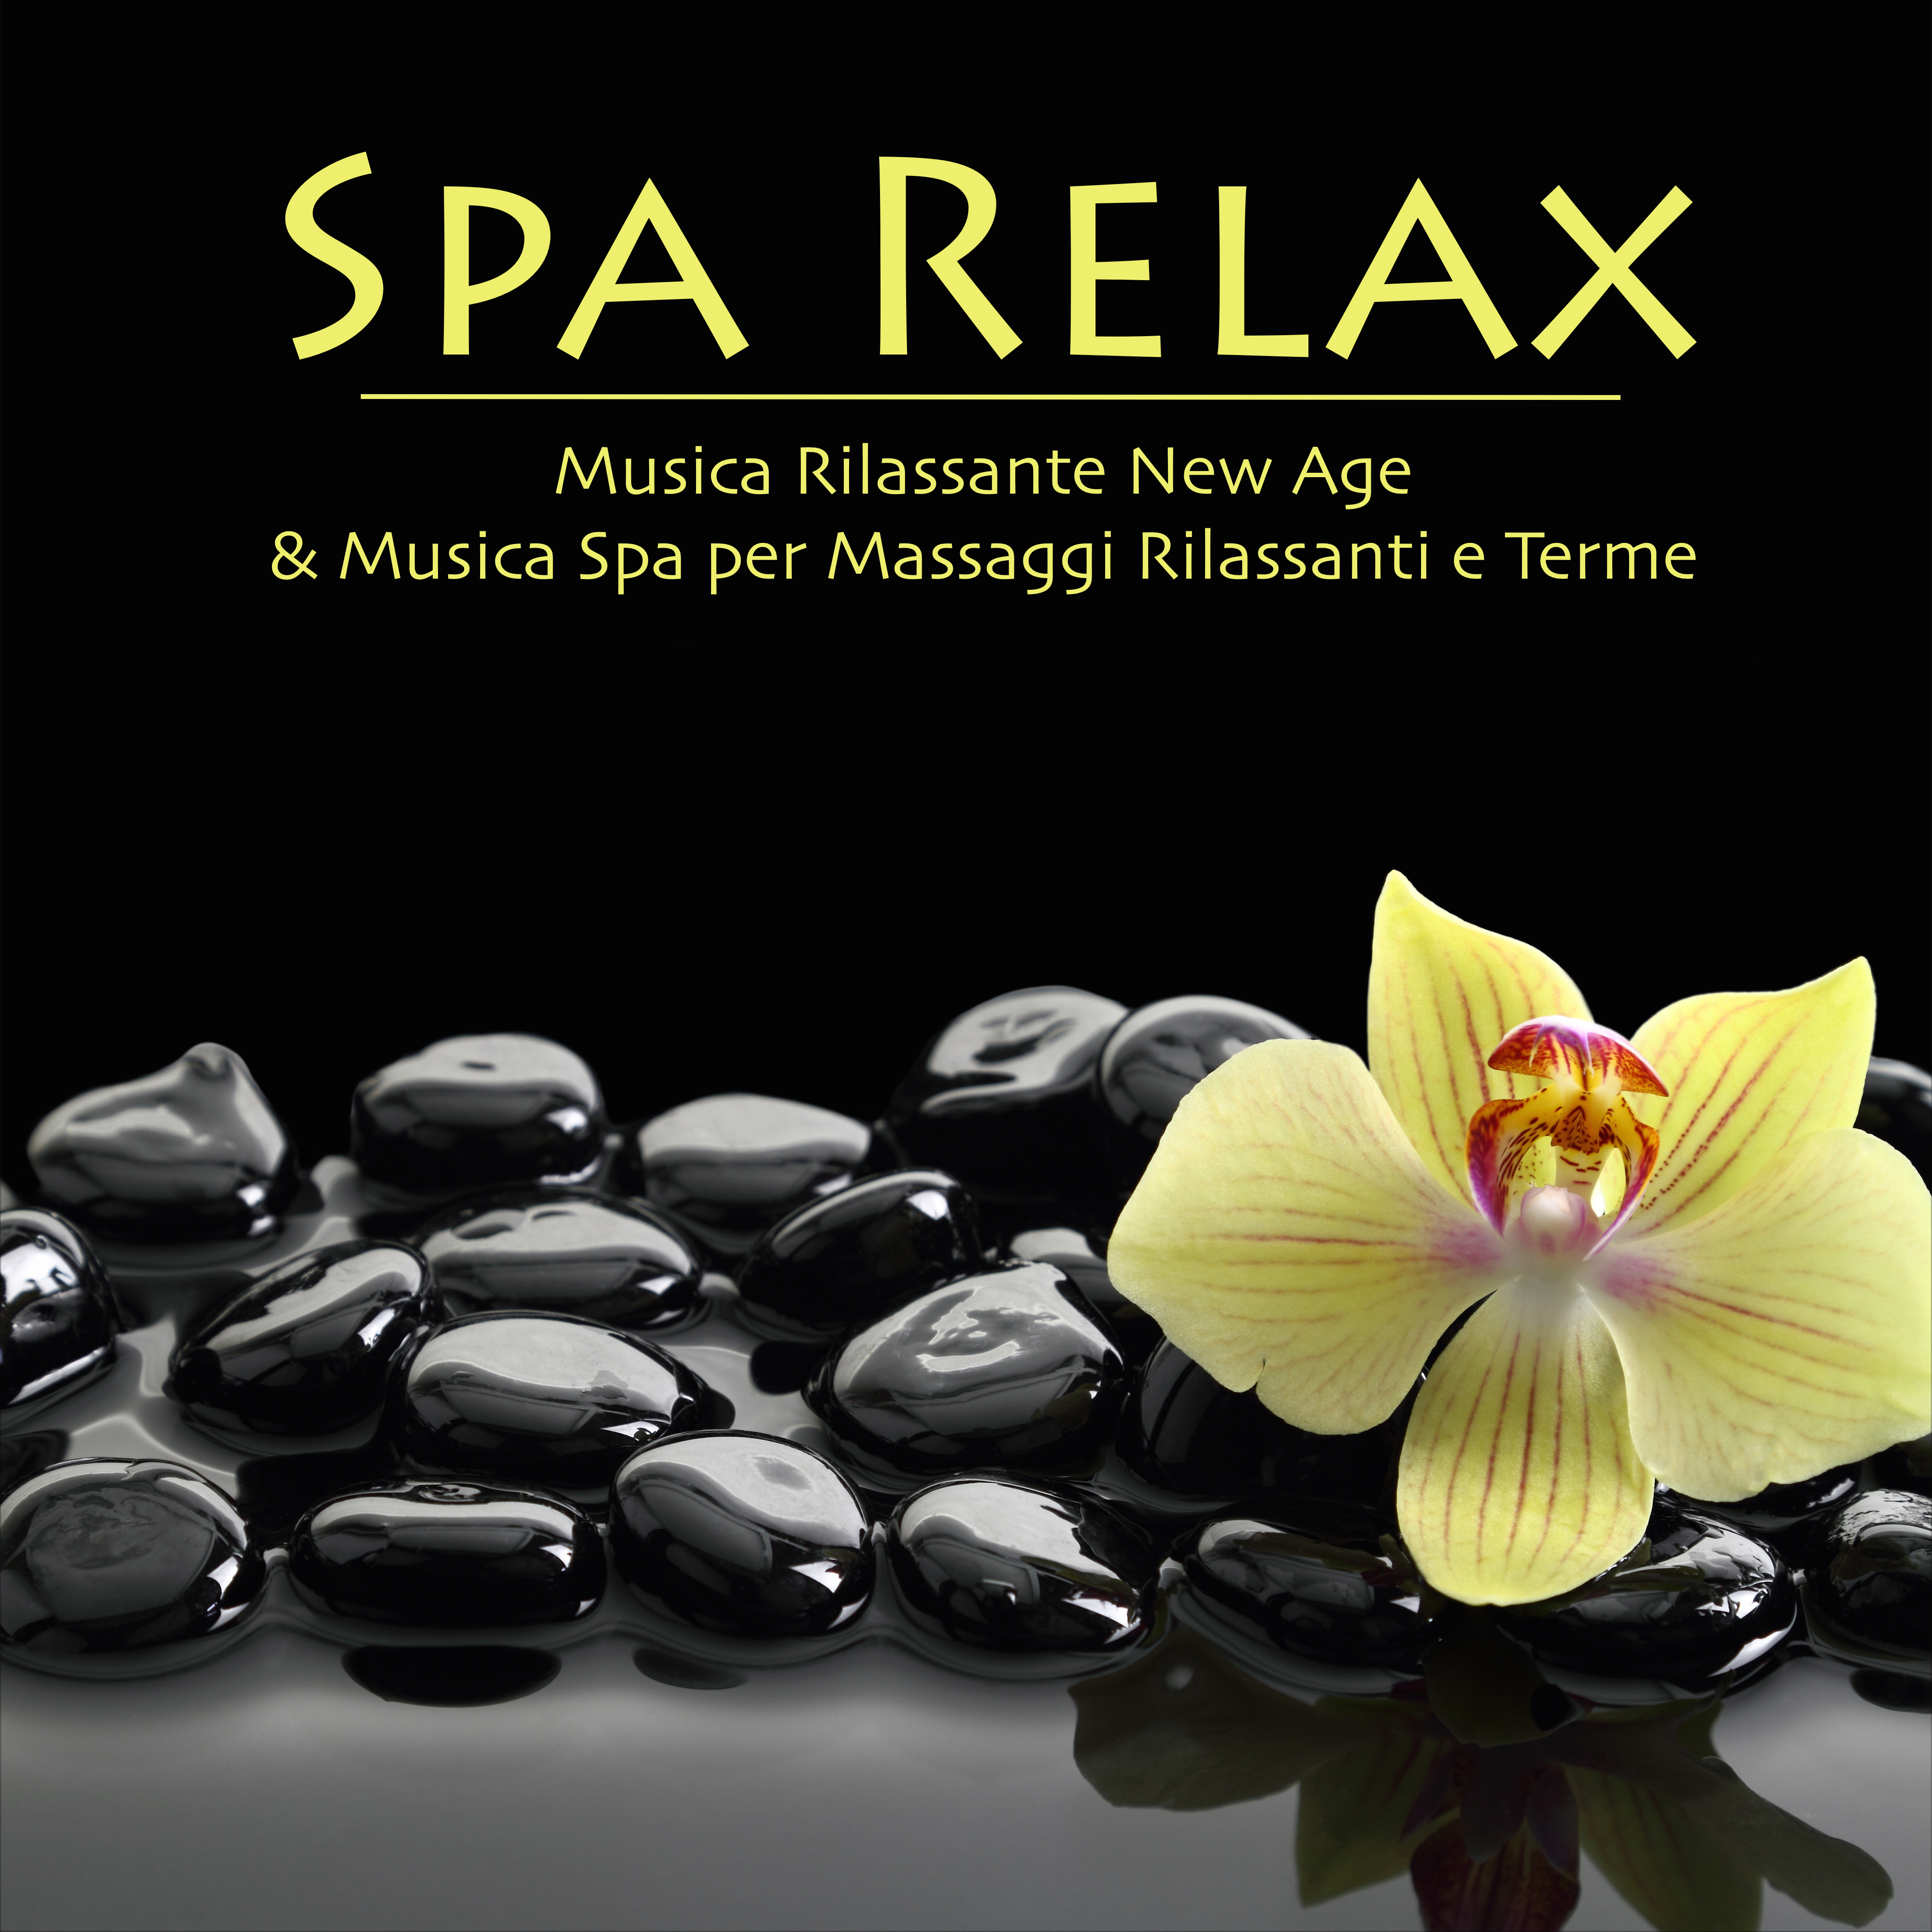 Spa Relax - Musica Rilassante New Age & Musica Spa per Massaggi Rilassanti e Terme